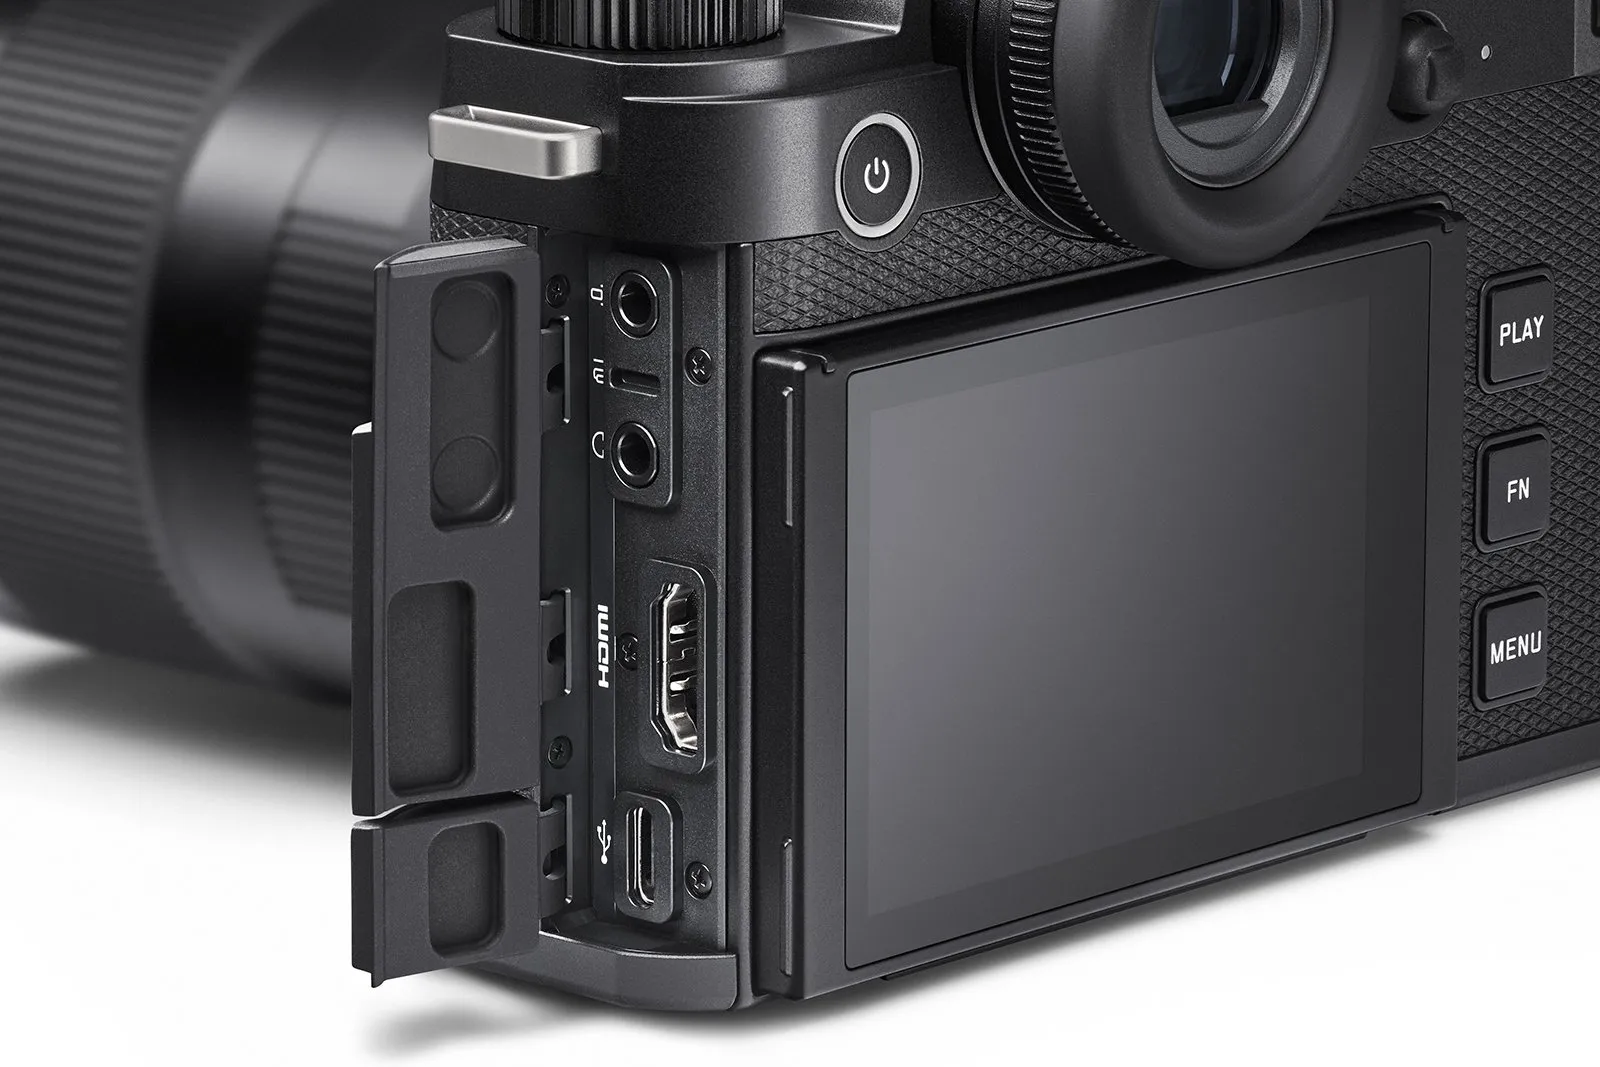 Máy ảnh Leica SL3 ra mắt với cảm biến khủng 60MP, đạt chuẩn IP54 và tính năng PDAF